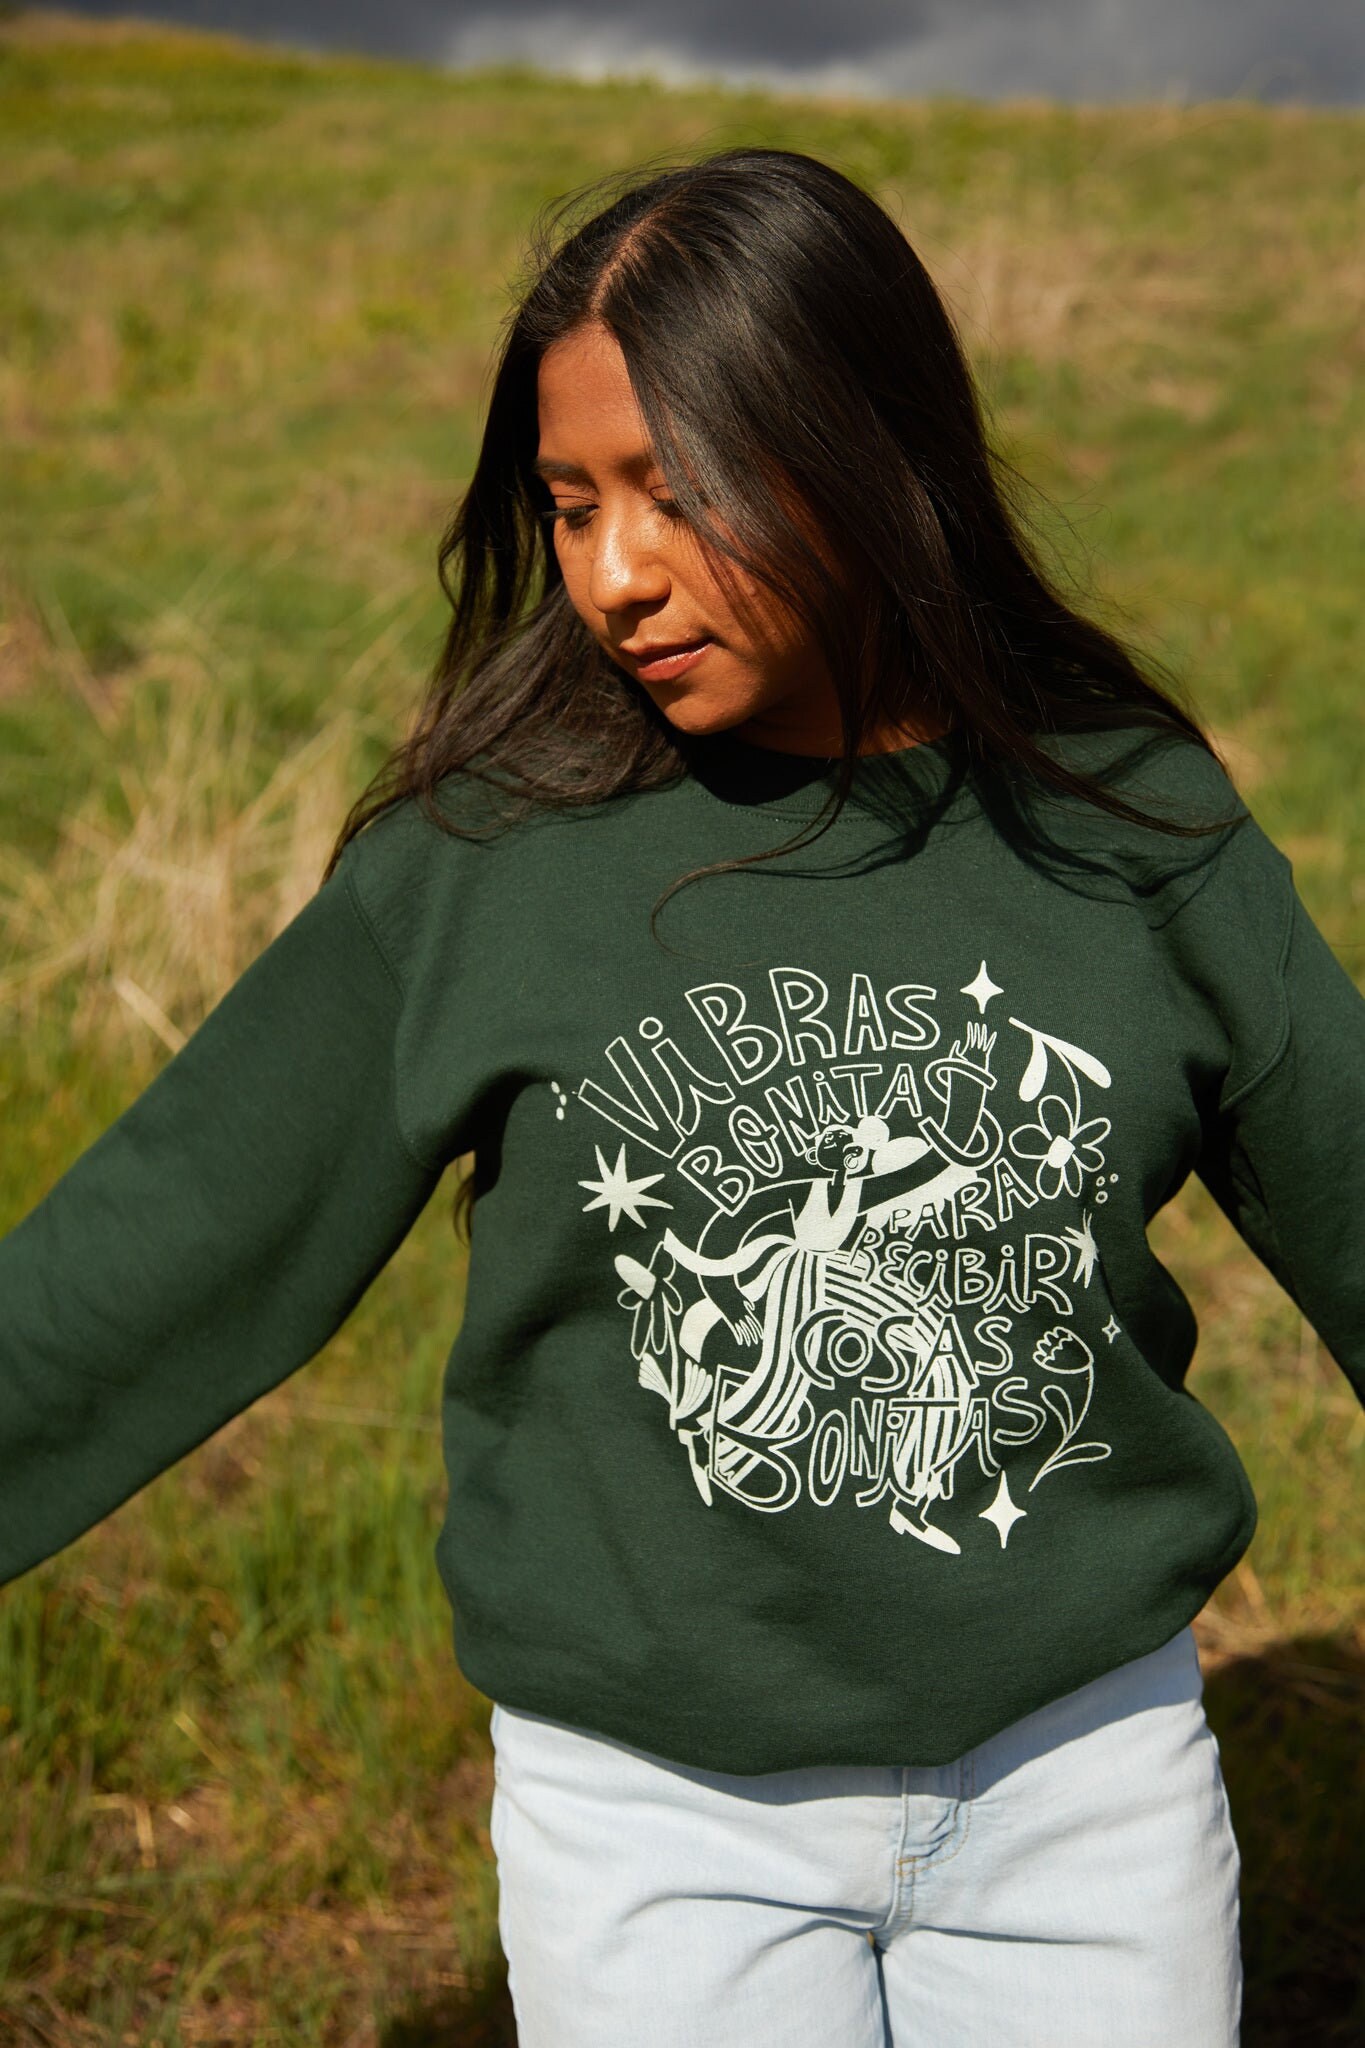 Vibras Bonitas Jägergrünes Sweatshirt von JenZeanoDesigns